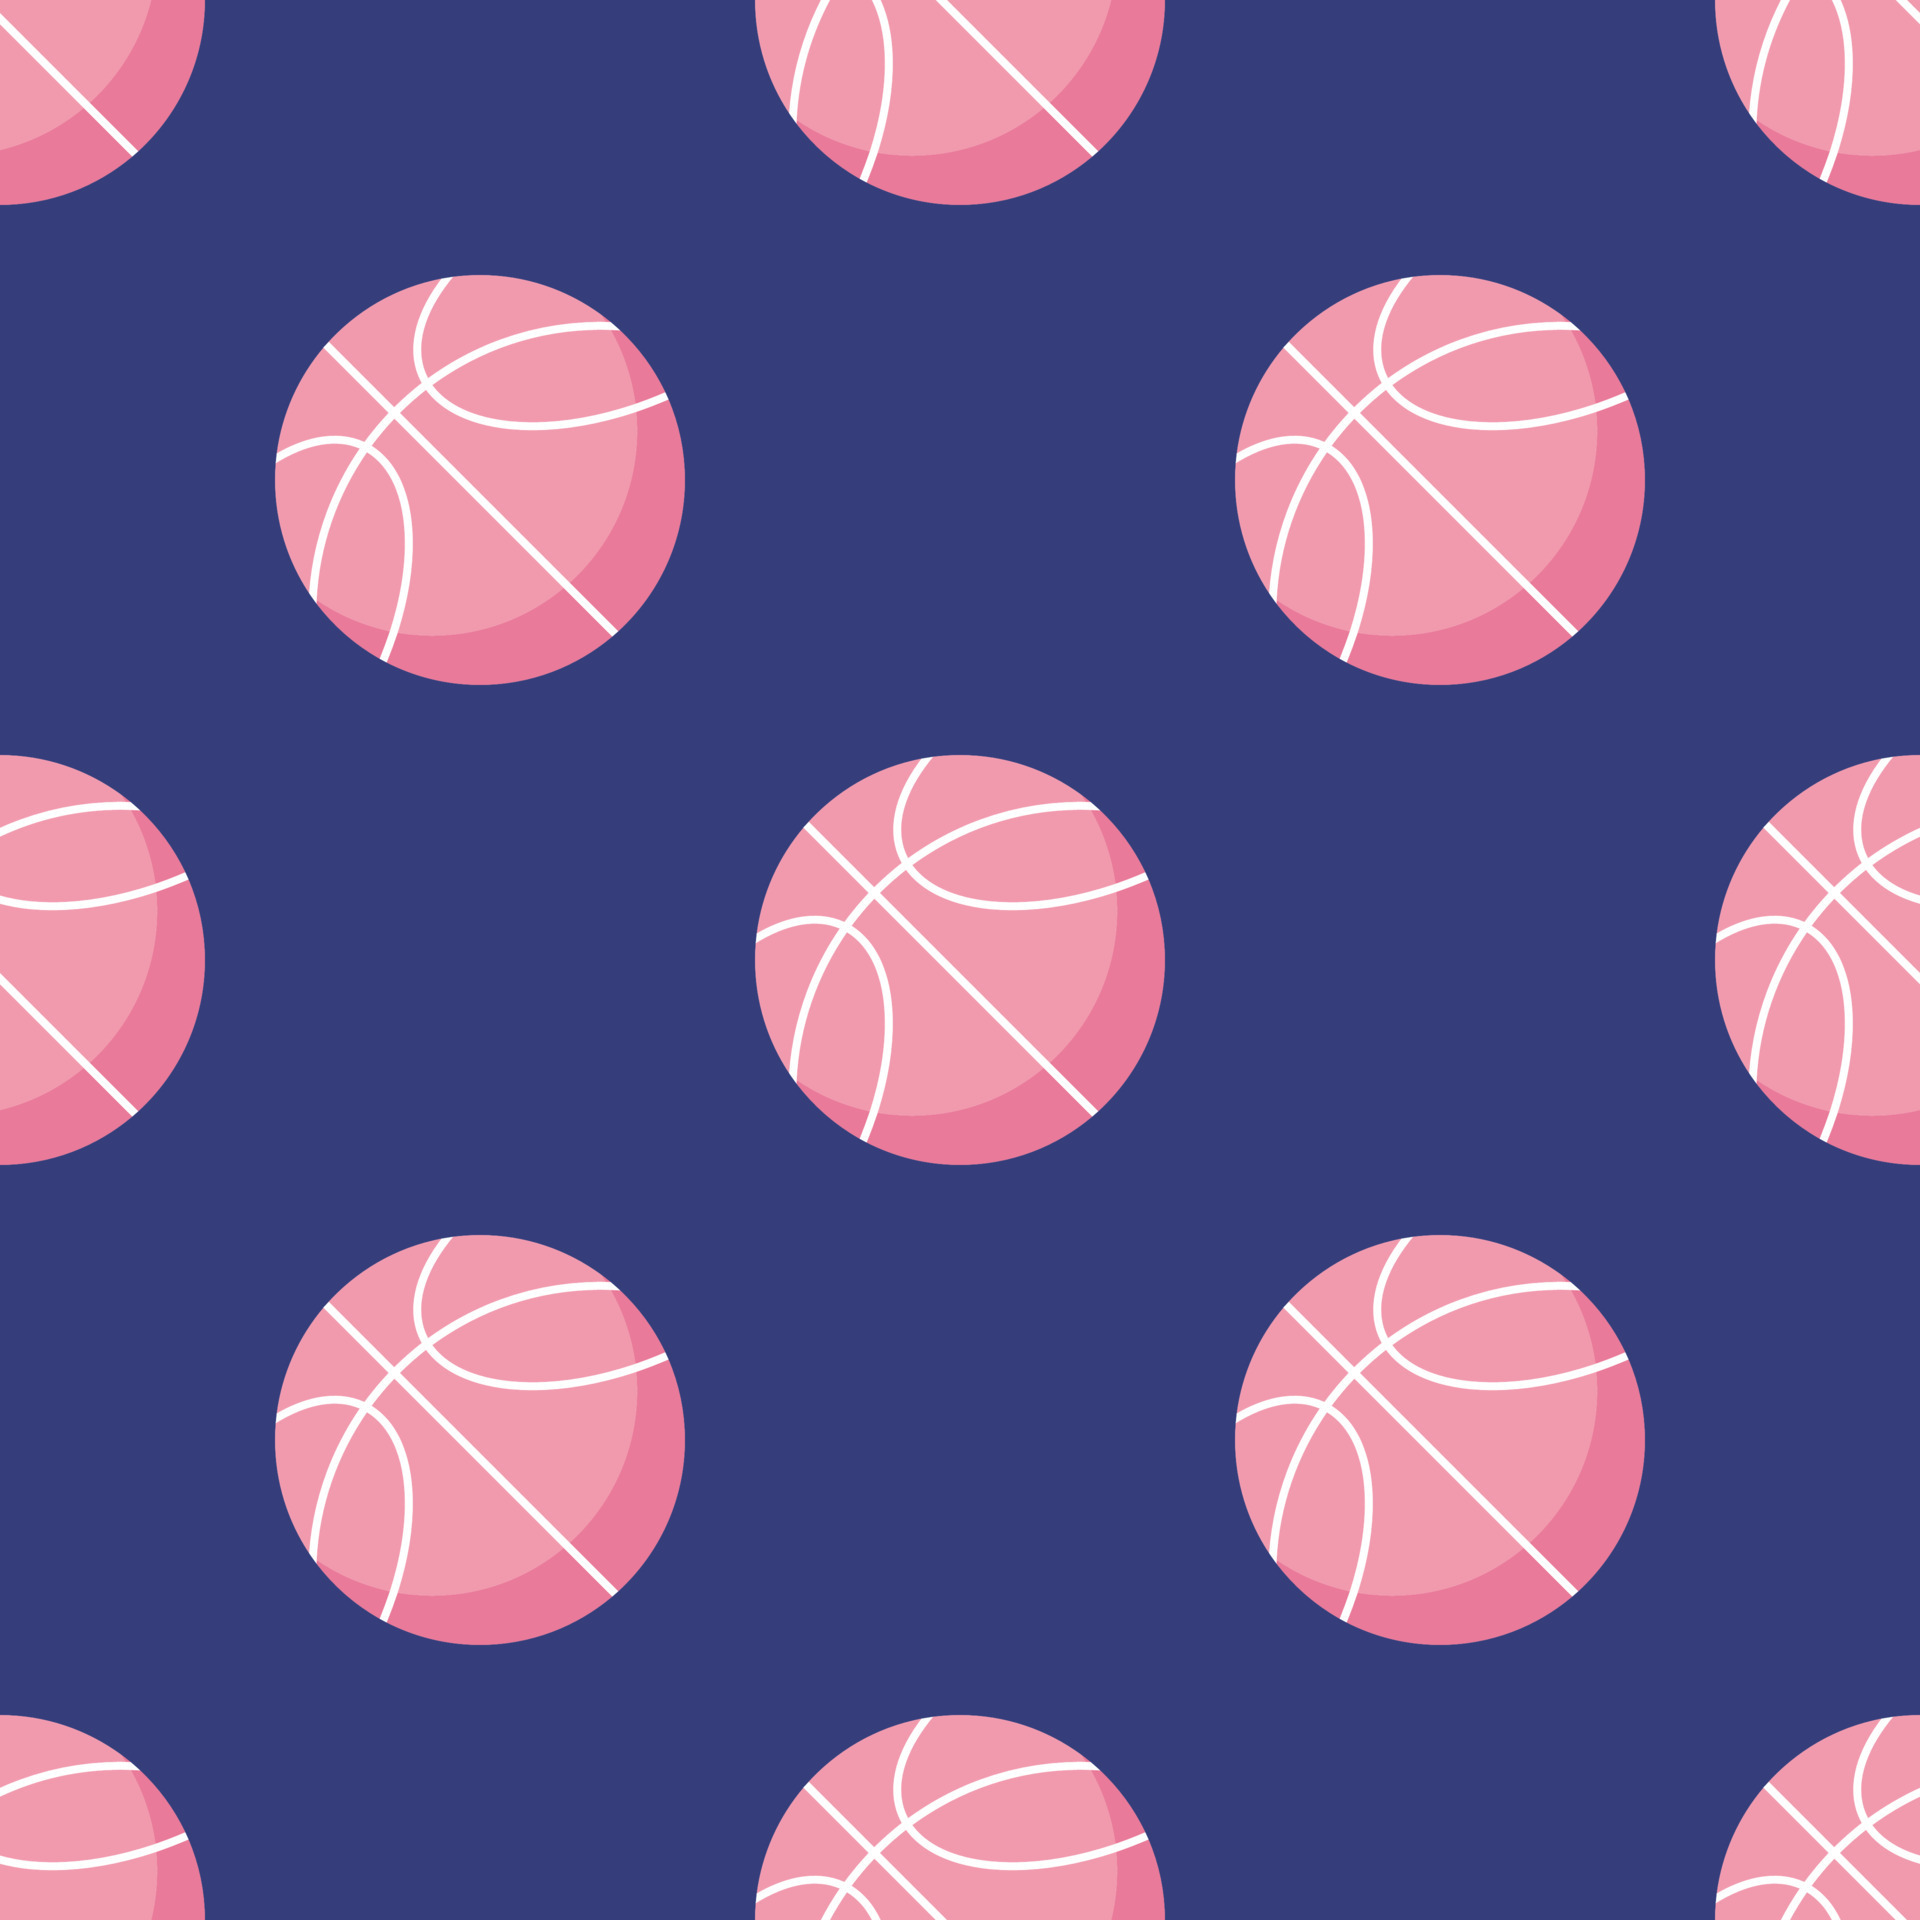 Hãy tưởng tượng một trận đấu bóng rổ với một quả bóng màu hồng tươi sáng chút! Hình ảnh độc đáo này chắc chắn sẽ làm bạn cảm thấy thích thú và muốn khám phá hơn về bóng rổ hồng. Bạn có tin rằng nó có thể làm cho trận đấu thú vị hơn và cùng giới trẻ đang yêu thương môn thể thao này trở nên sôi động hơn chứ?